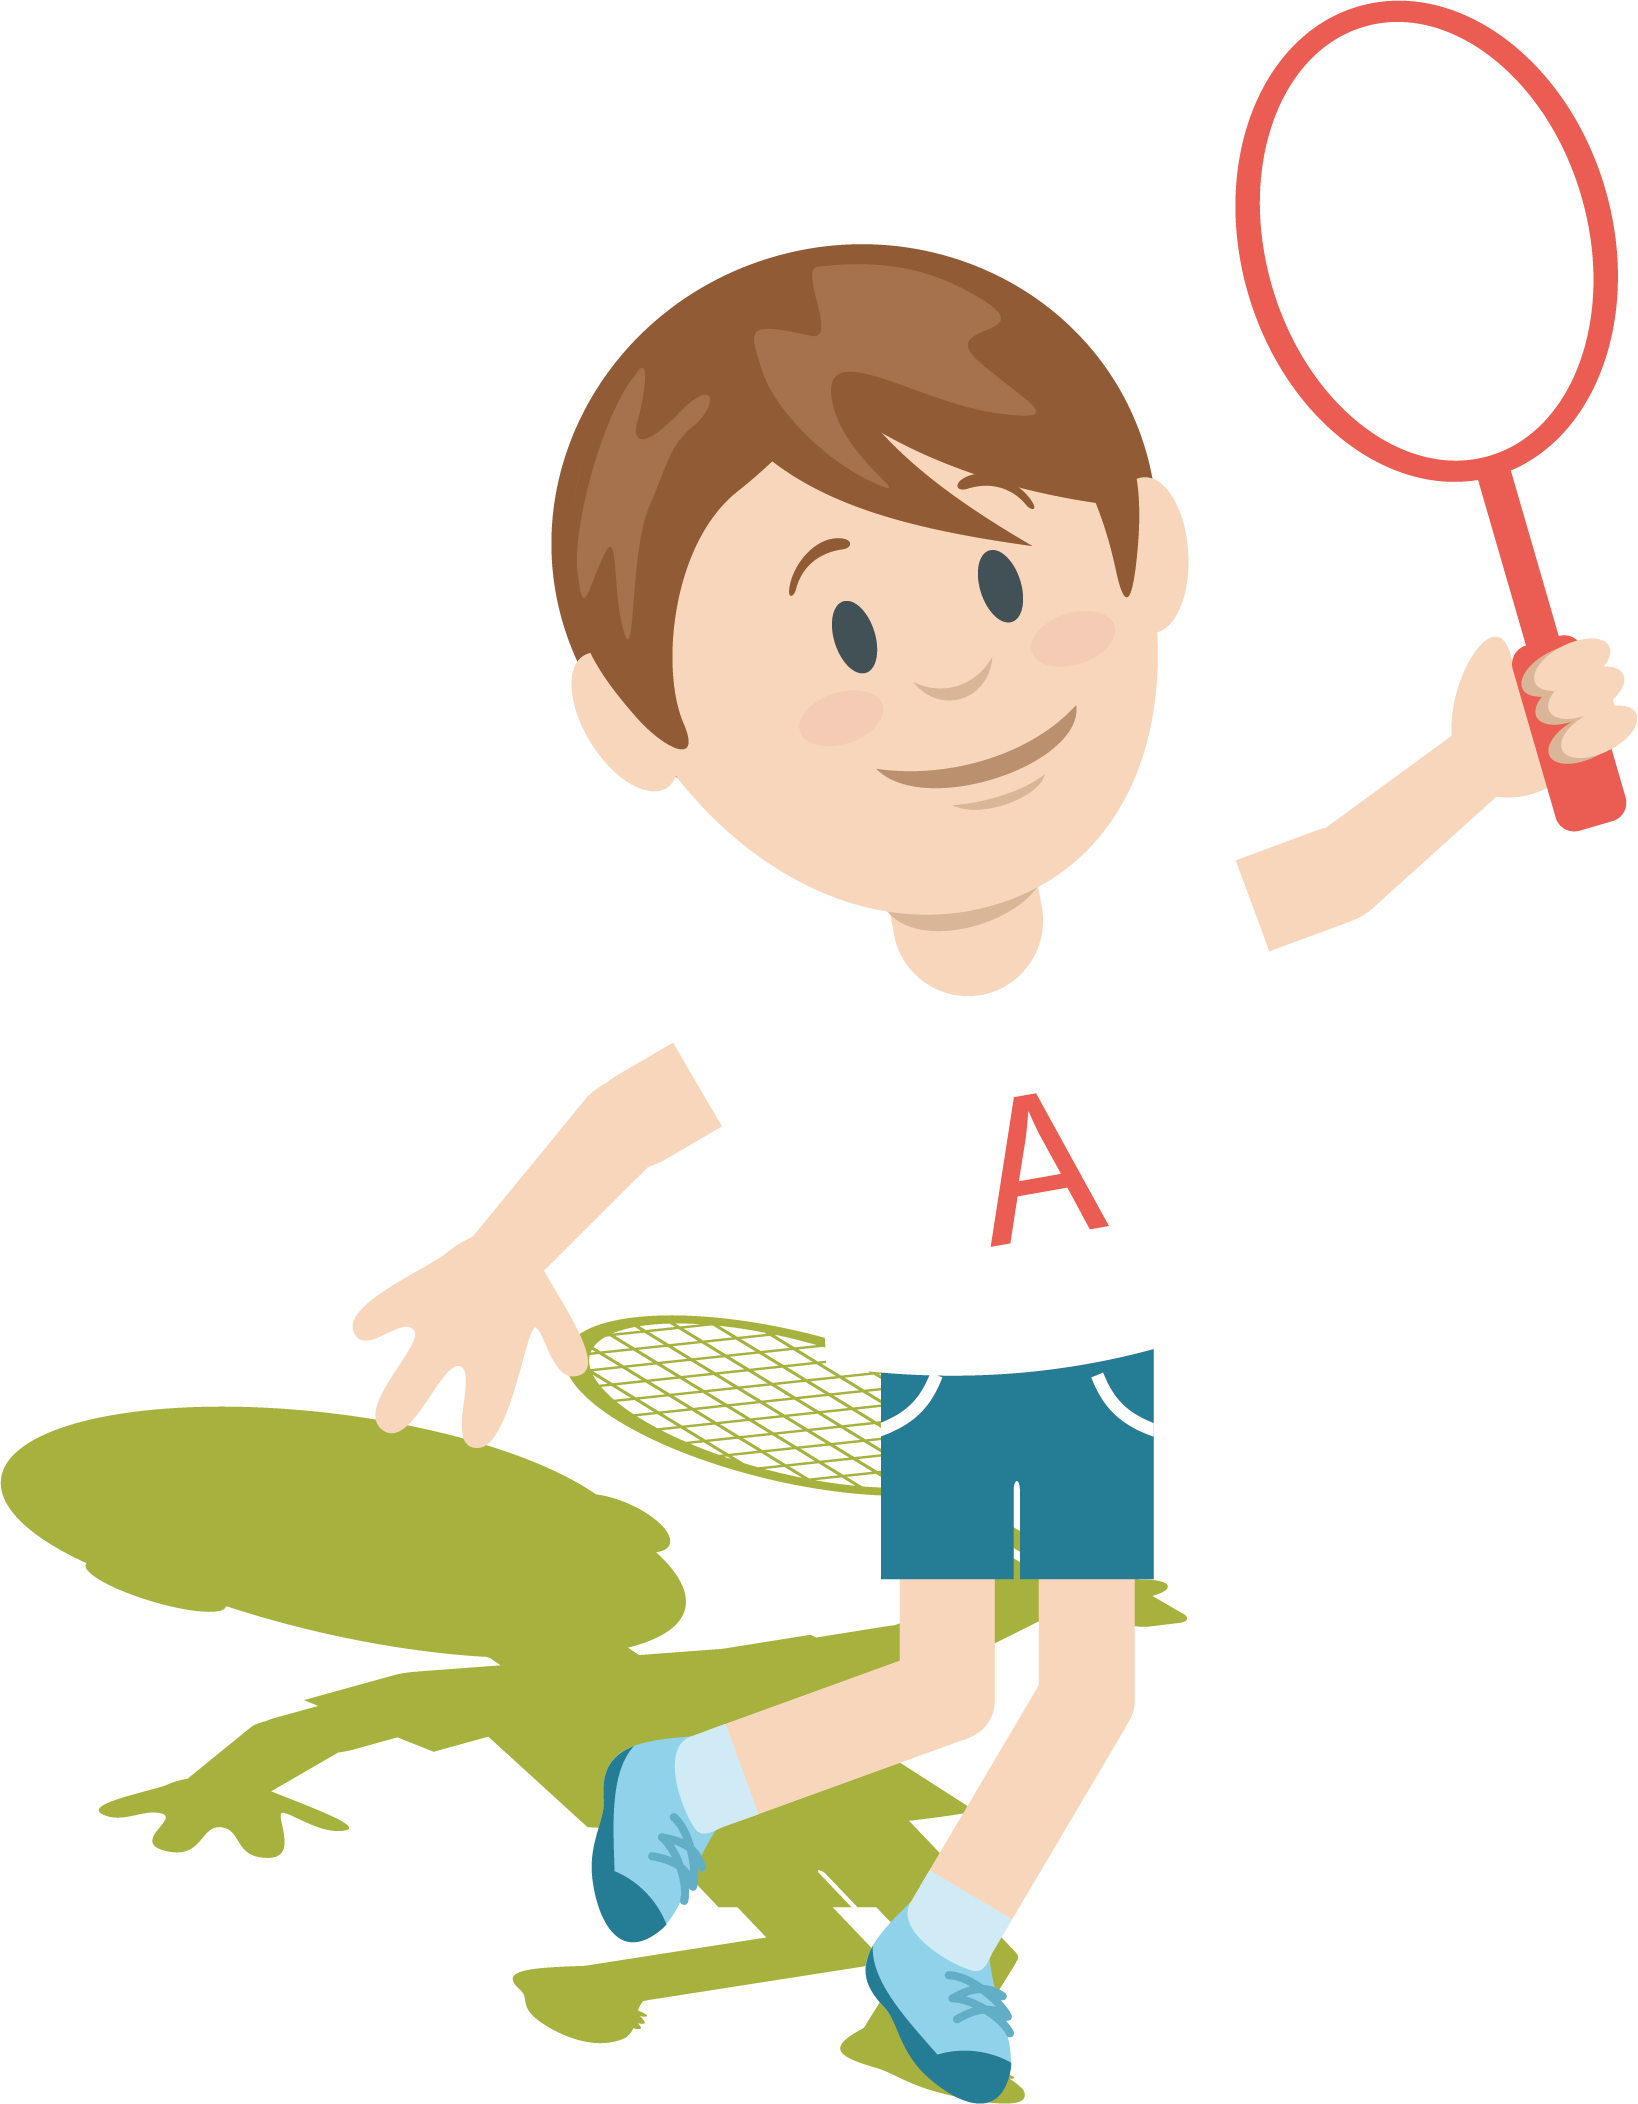 A Cartoon Of A Boy Holding A Tennis Racket